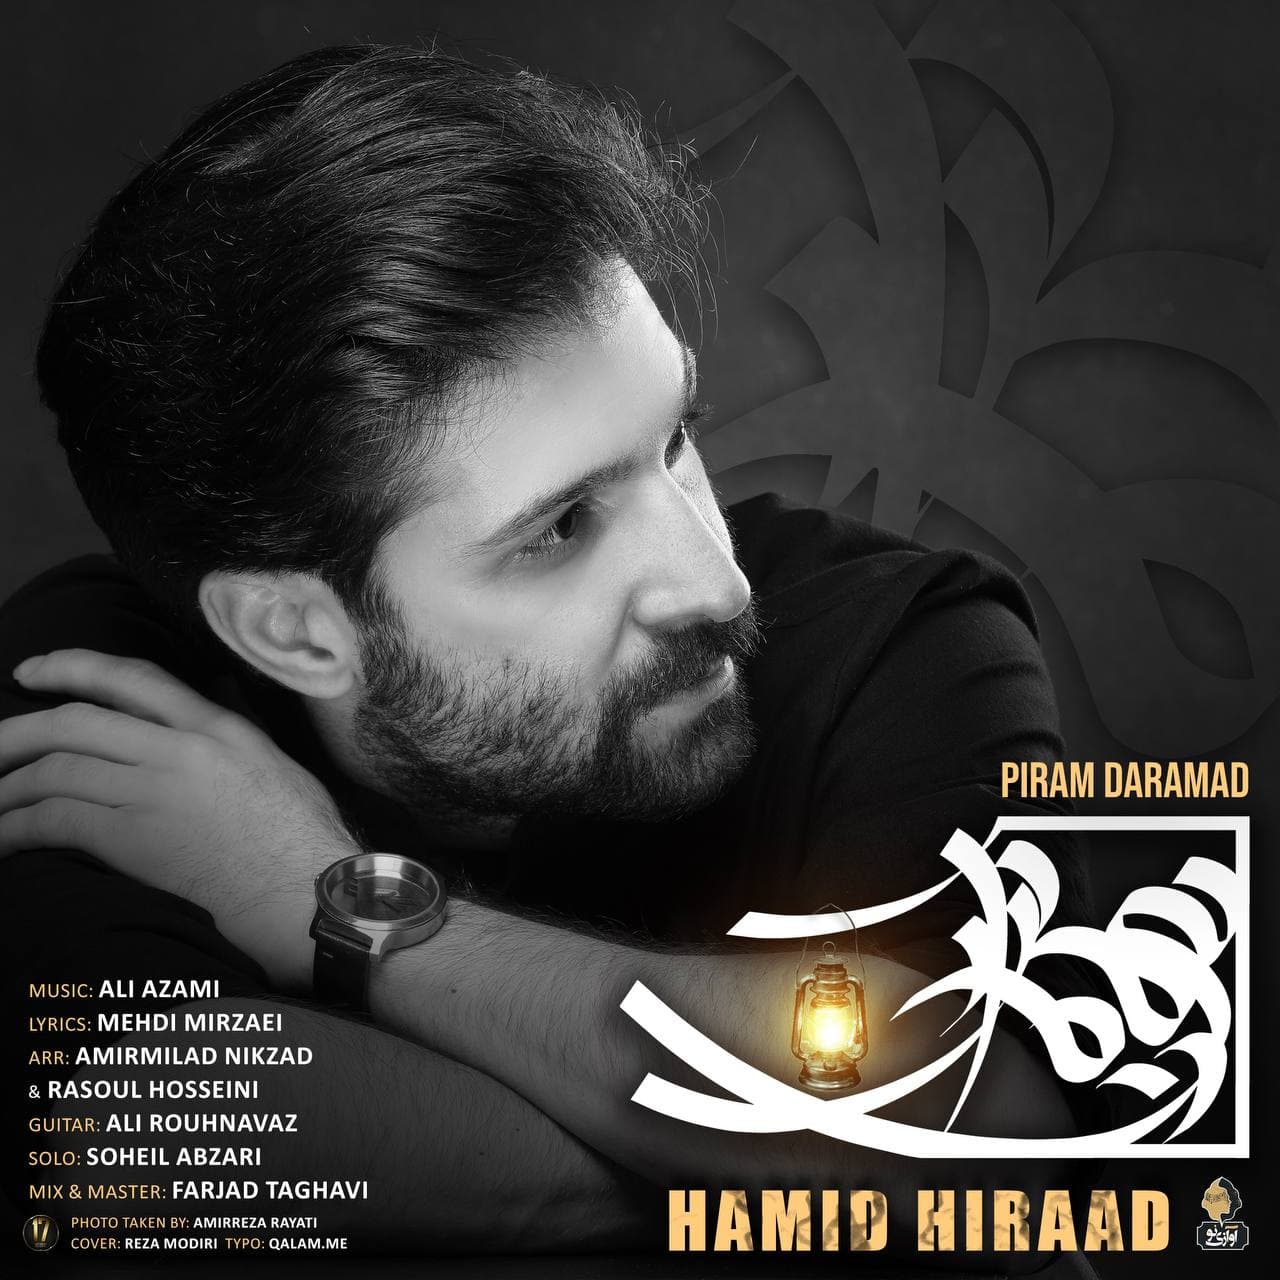 Hamid Hiraad Piram Daramad 